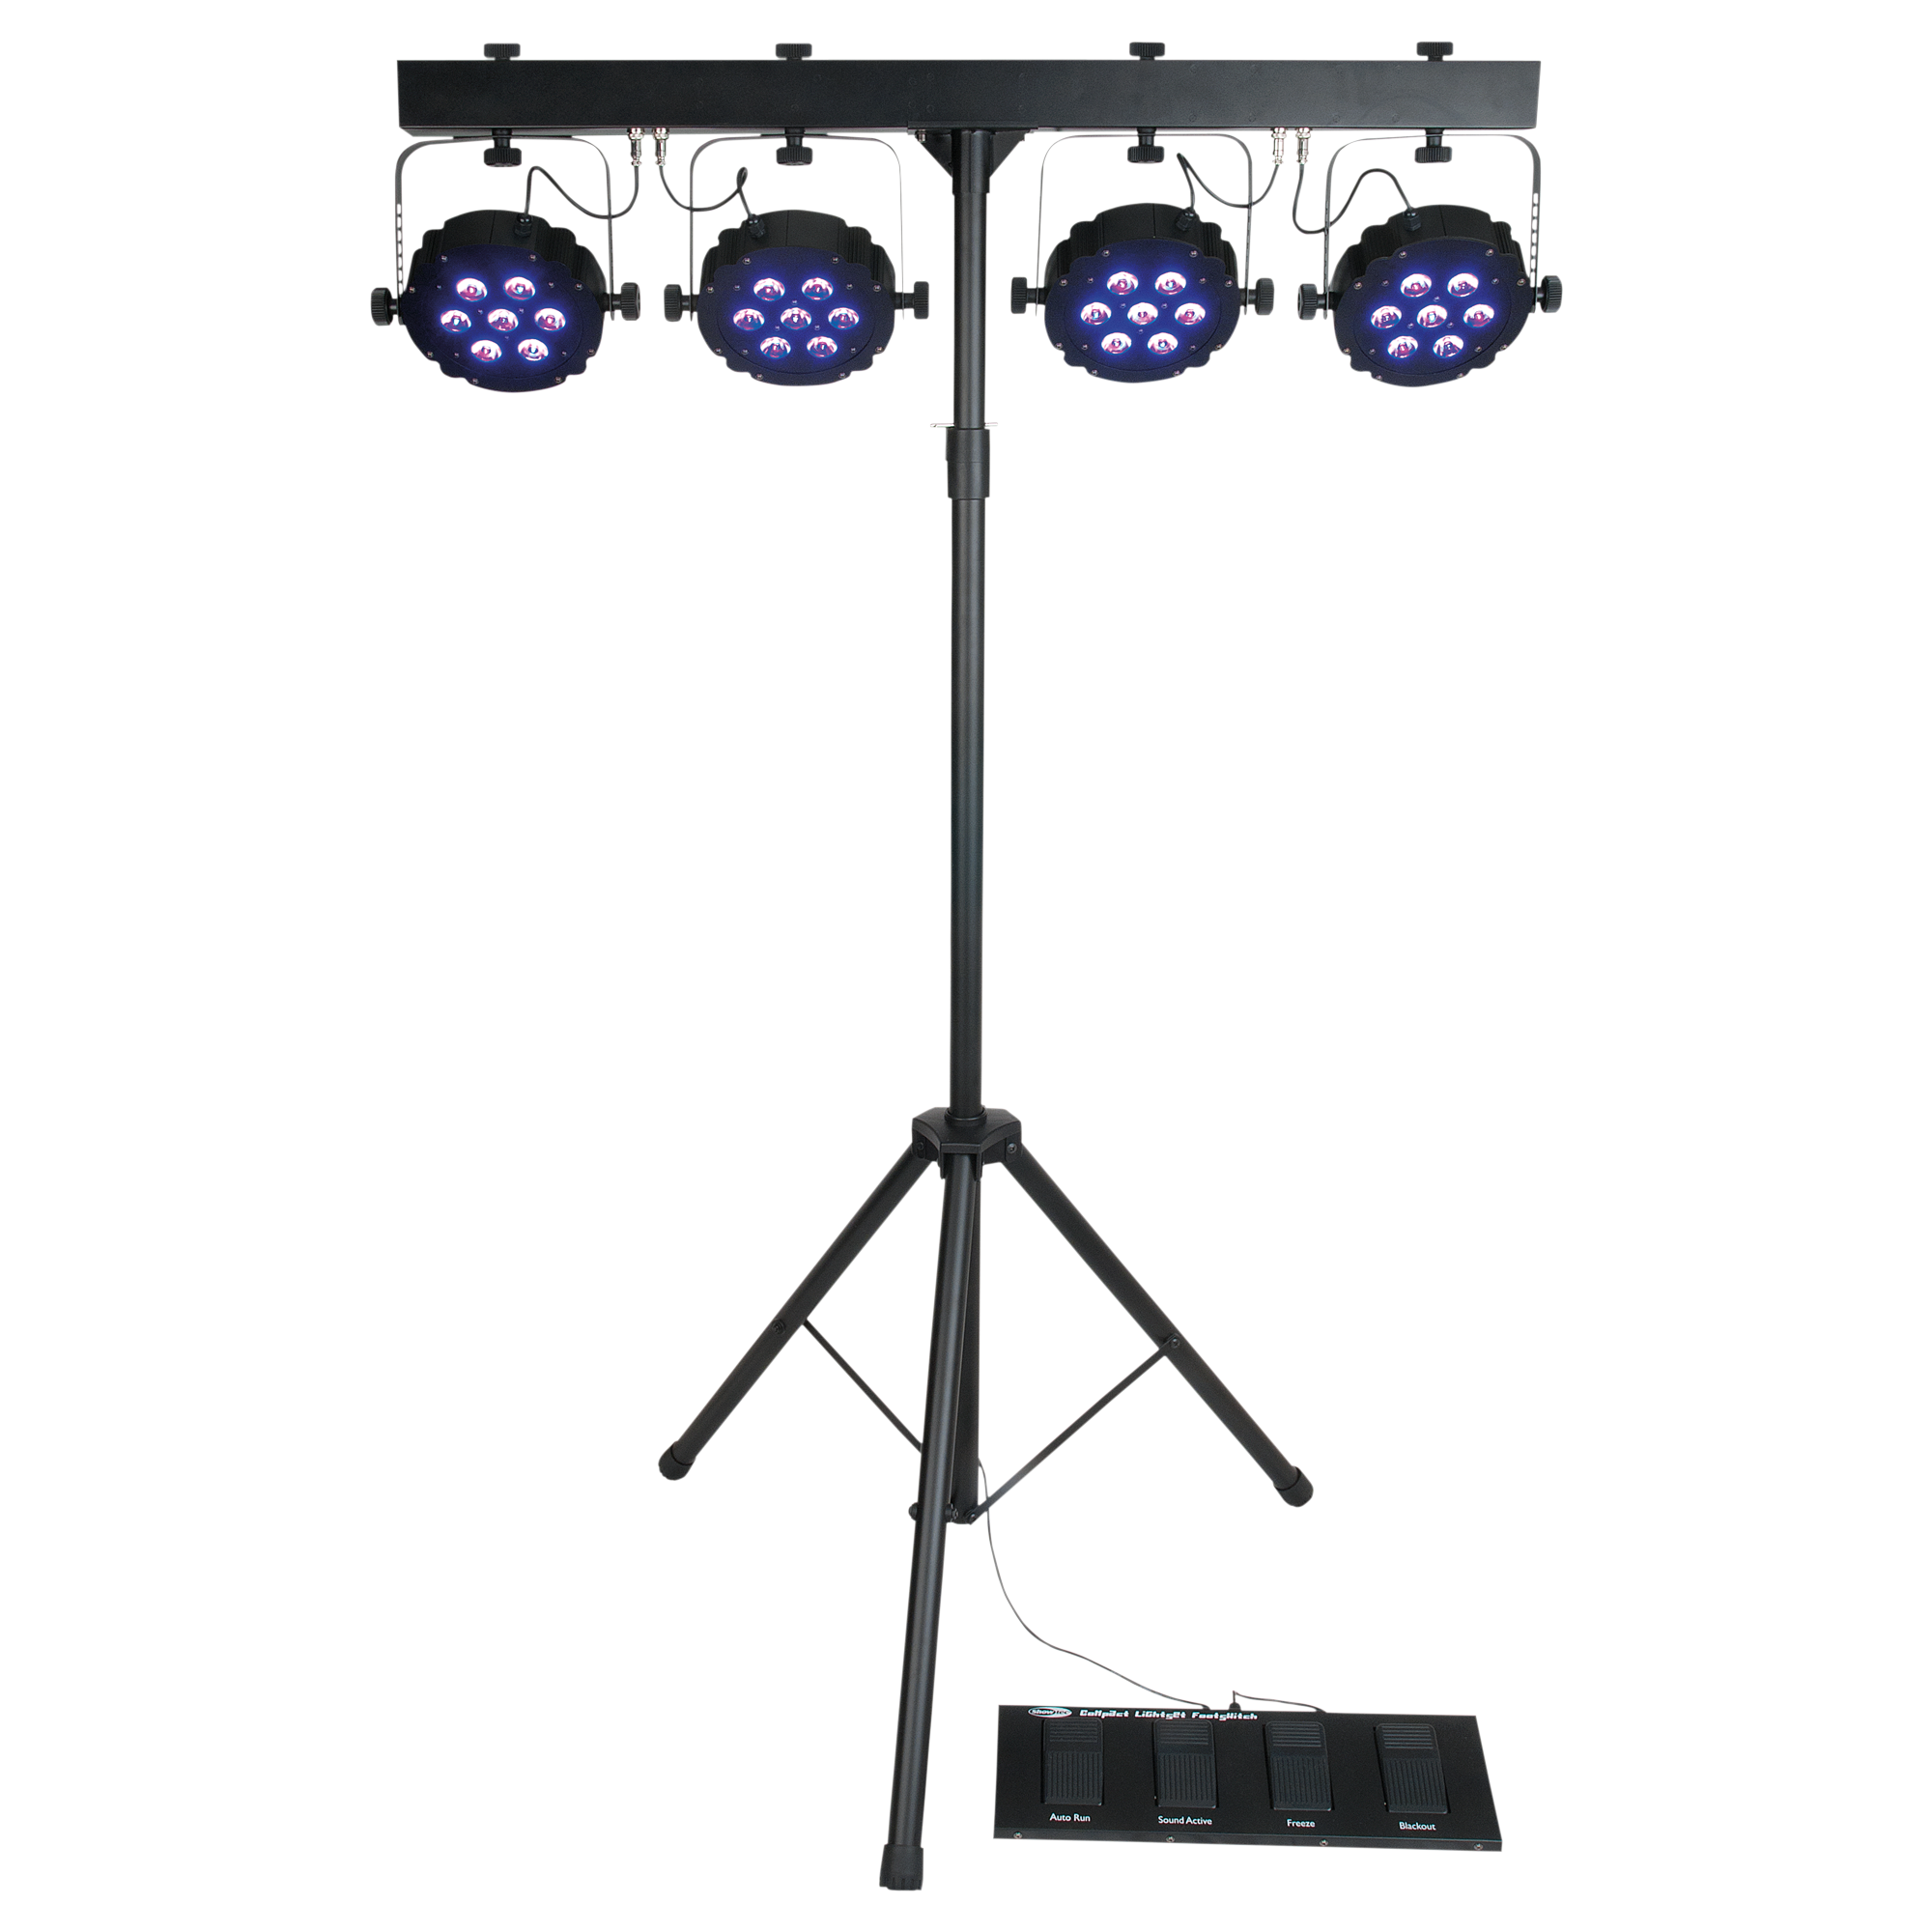 Showtec Compact Power Light Set MKII inkl. Tasche, Fußschalter und Ständer